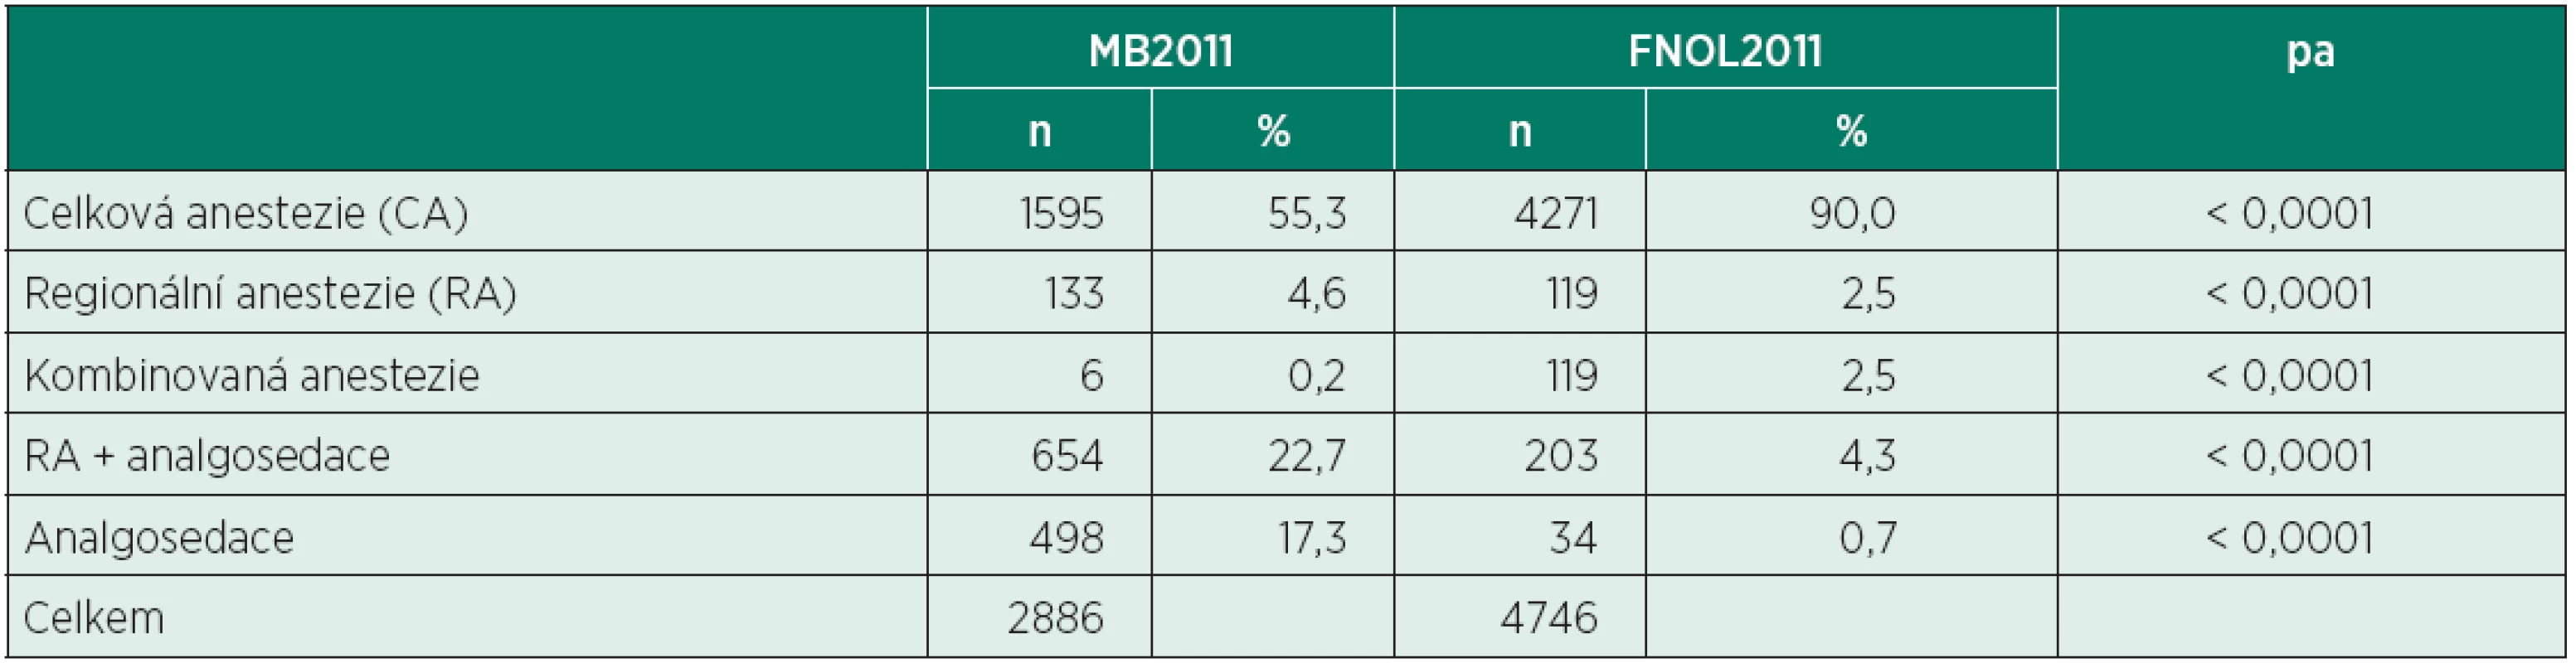 Zastoupení jednotlivých typů anesteziologické péče (MB2011 vs. FNOL2011)